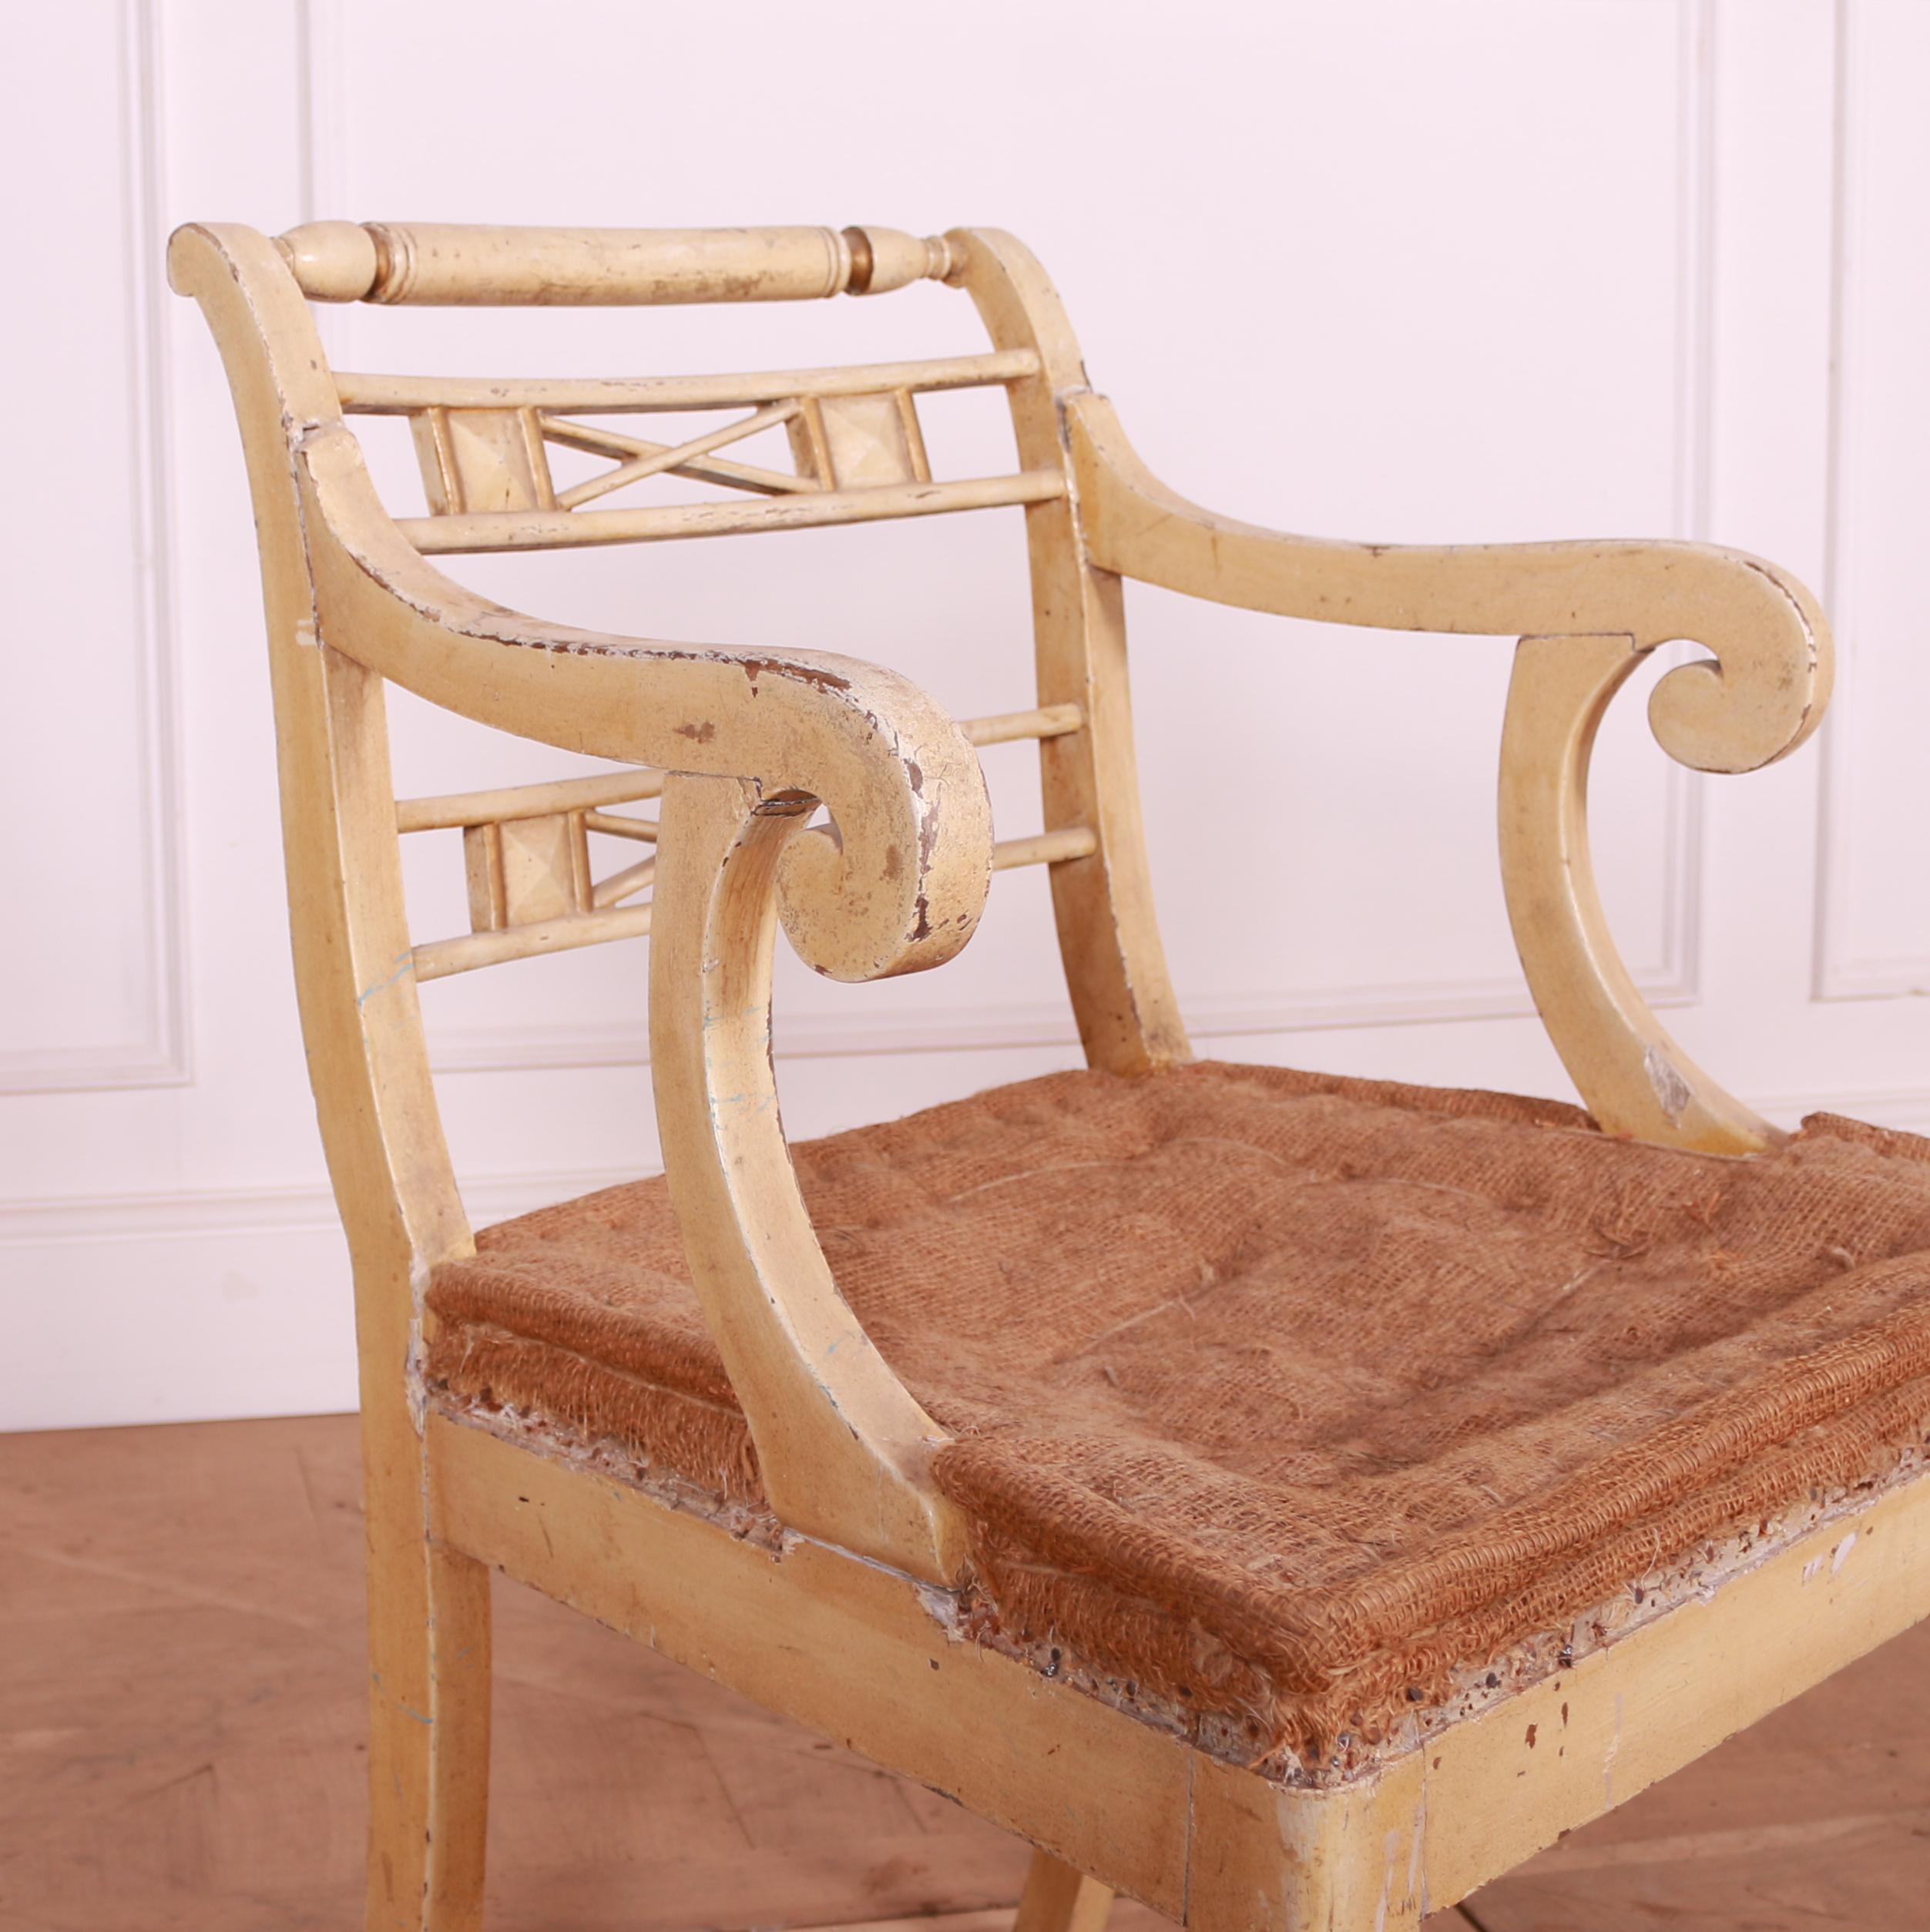 Chaise de bureau en chêne peint d'origine française du début du XIXe siècle. 1820.

La hauteur du siège est de 17,5



Dimensions
23 pouces (58 cms) de large
23 pouces (58 cms) de profondeur
32 pouces (81 cms) de hauteur.